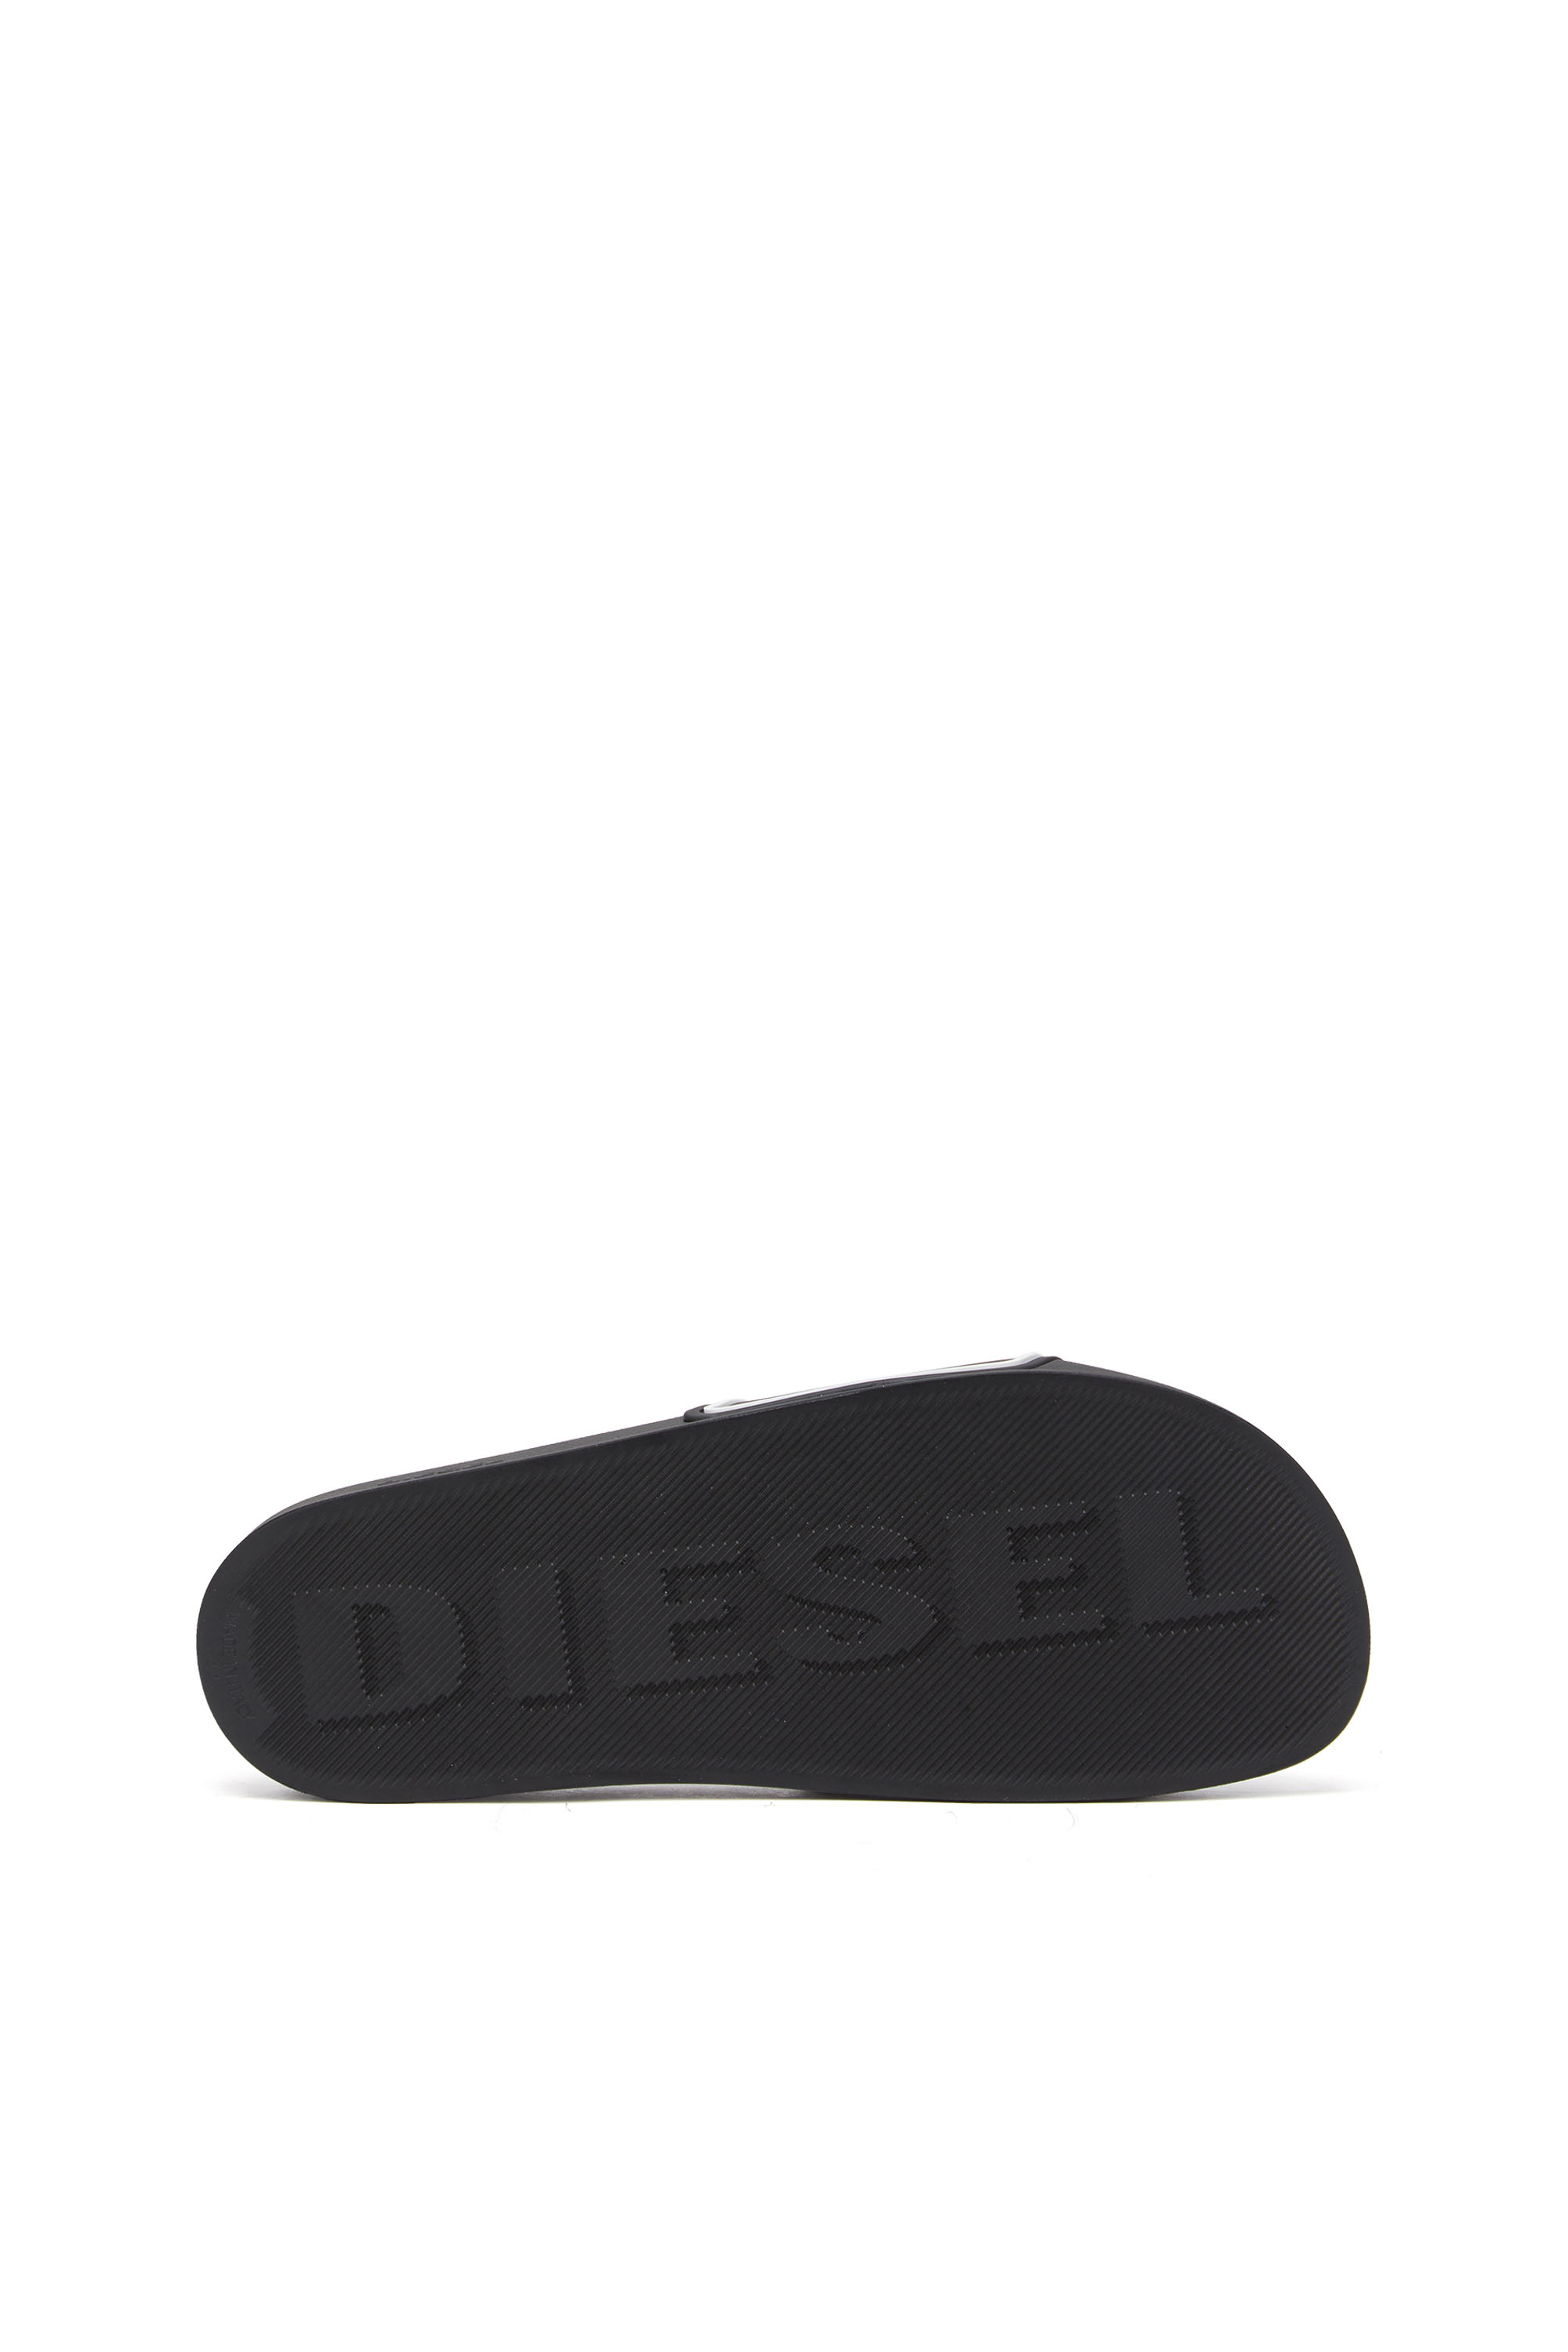 Diesel - SA-MAYEMI CC, Nero/Bianco - Image 4